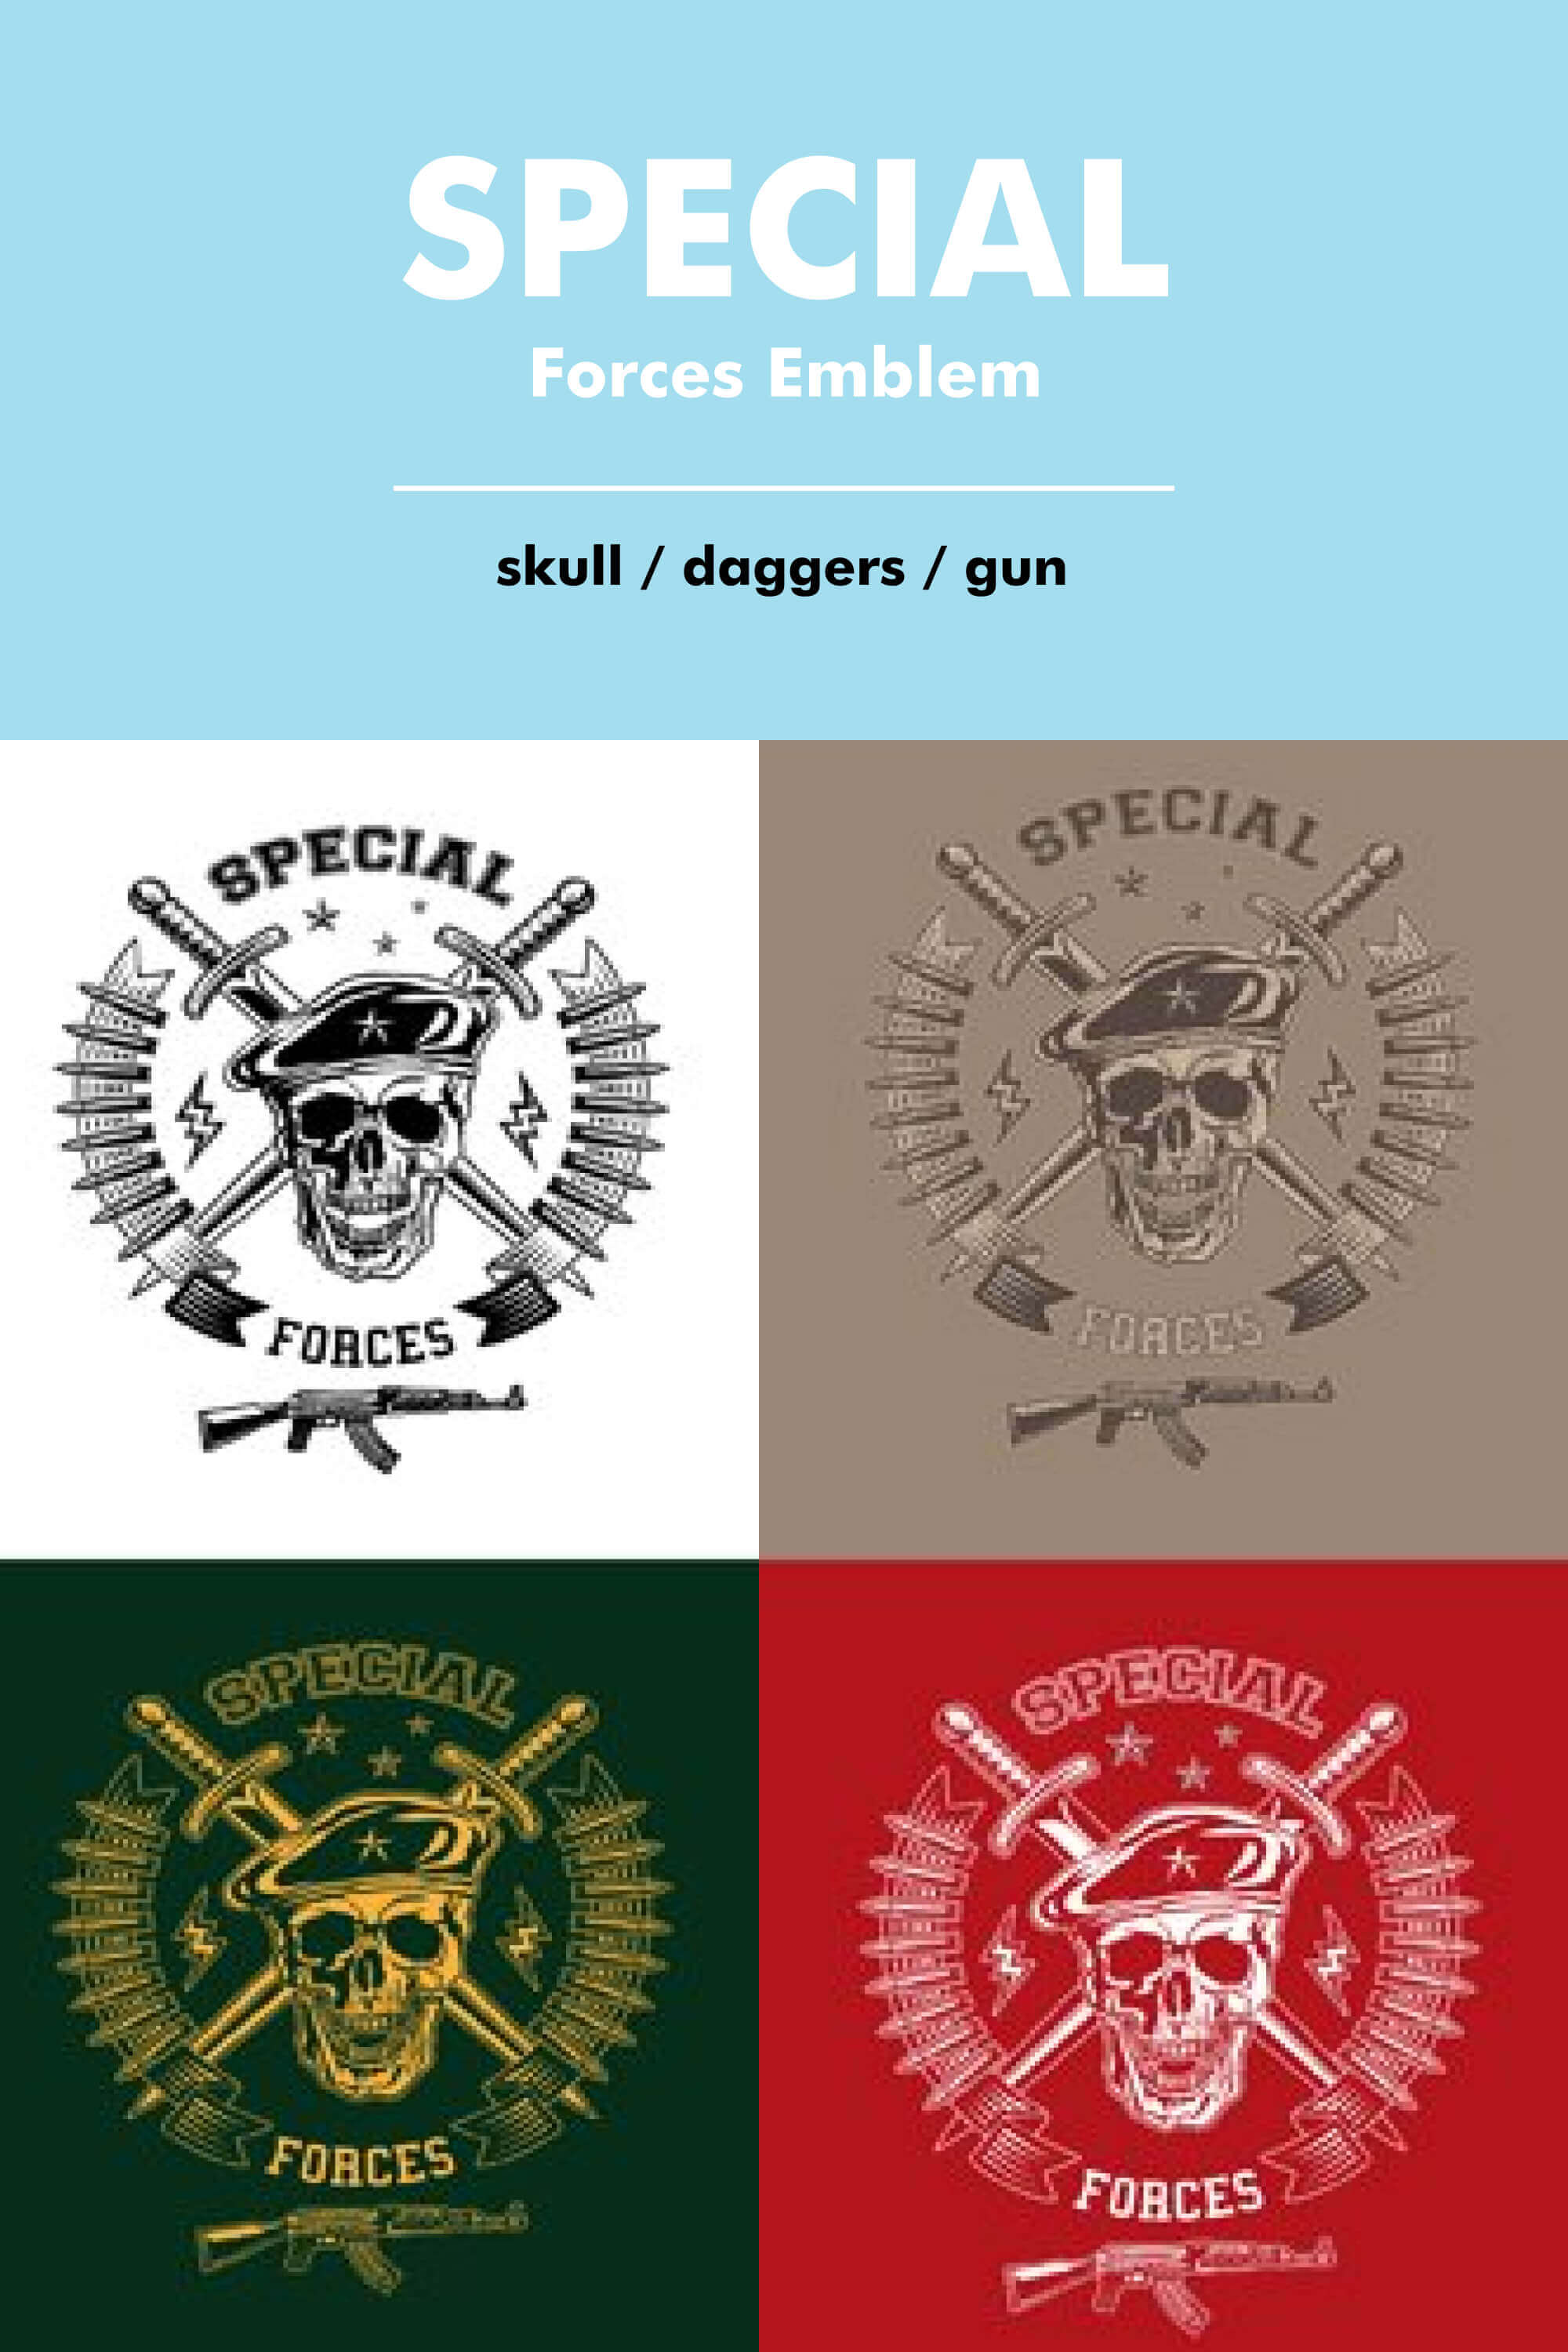 Skull, daggers, gun of special forces emblem.